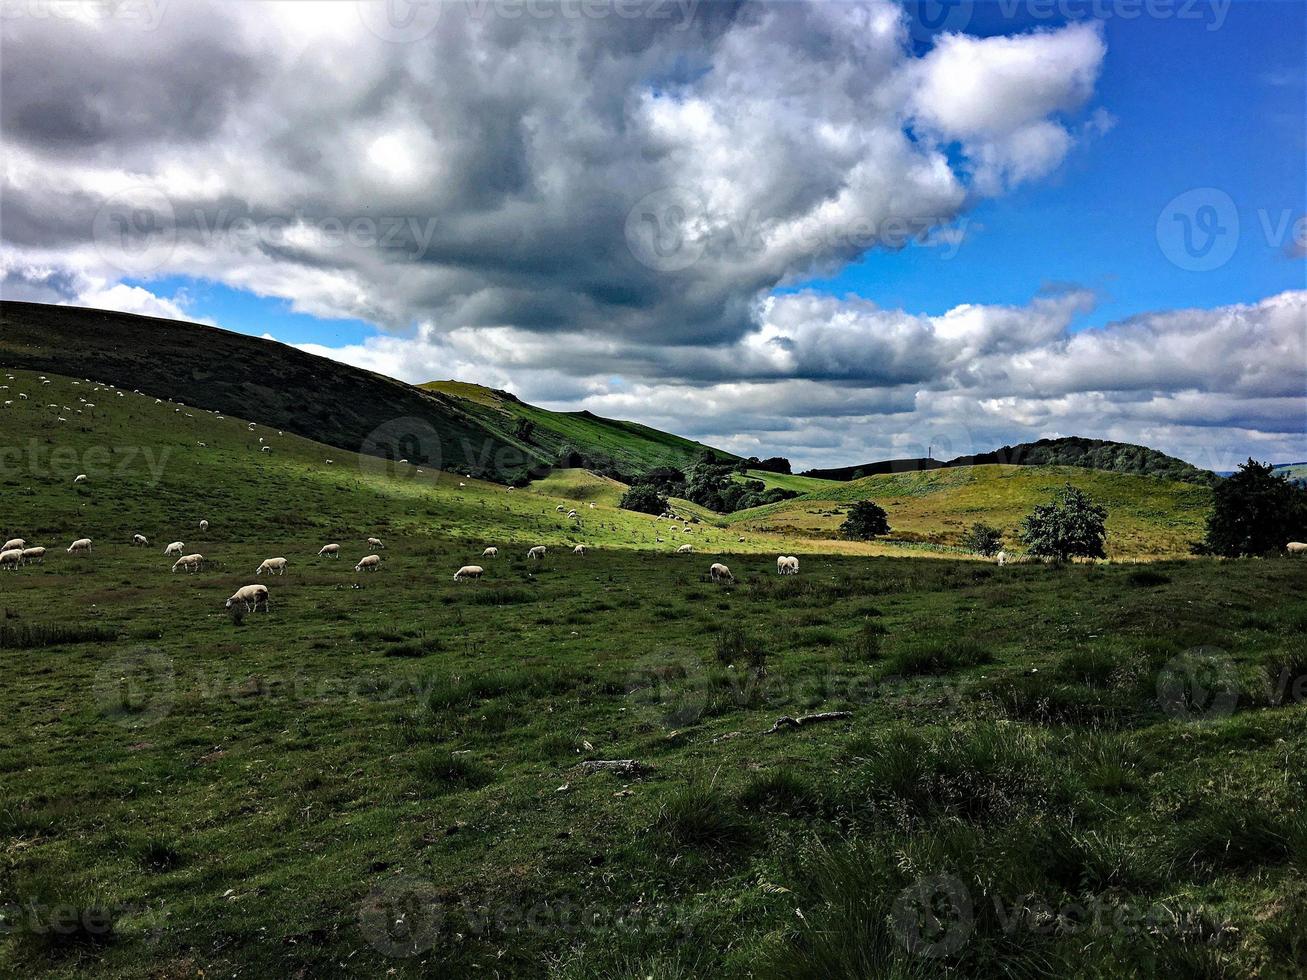 una vista delle colline del Caradoc nello Shropshire foto